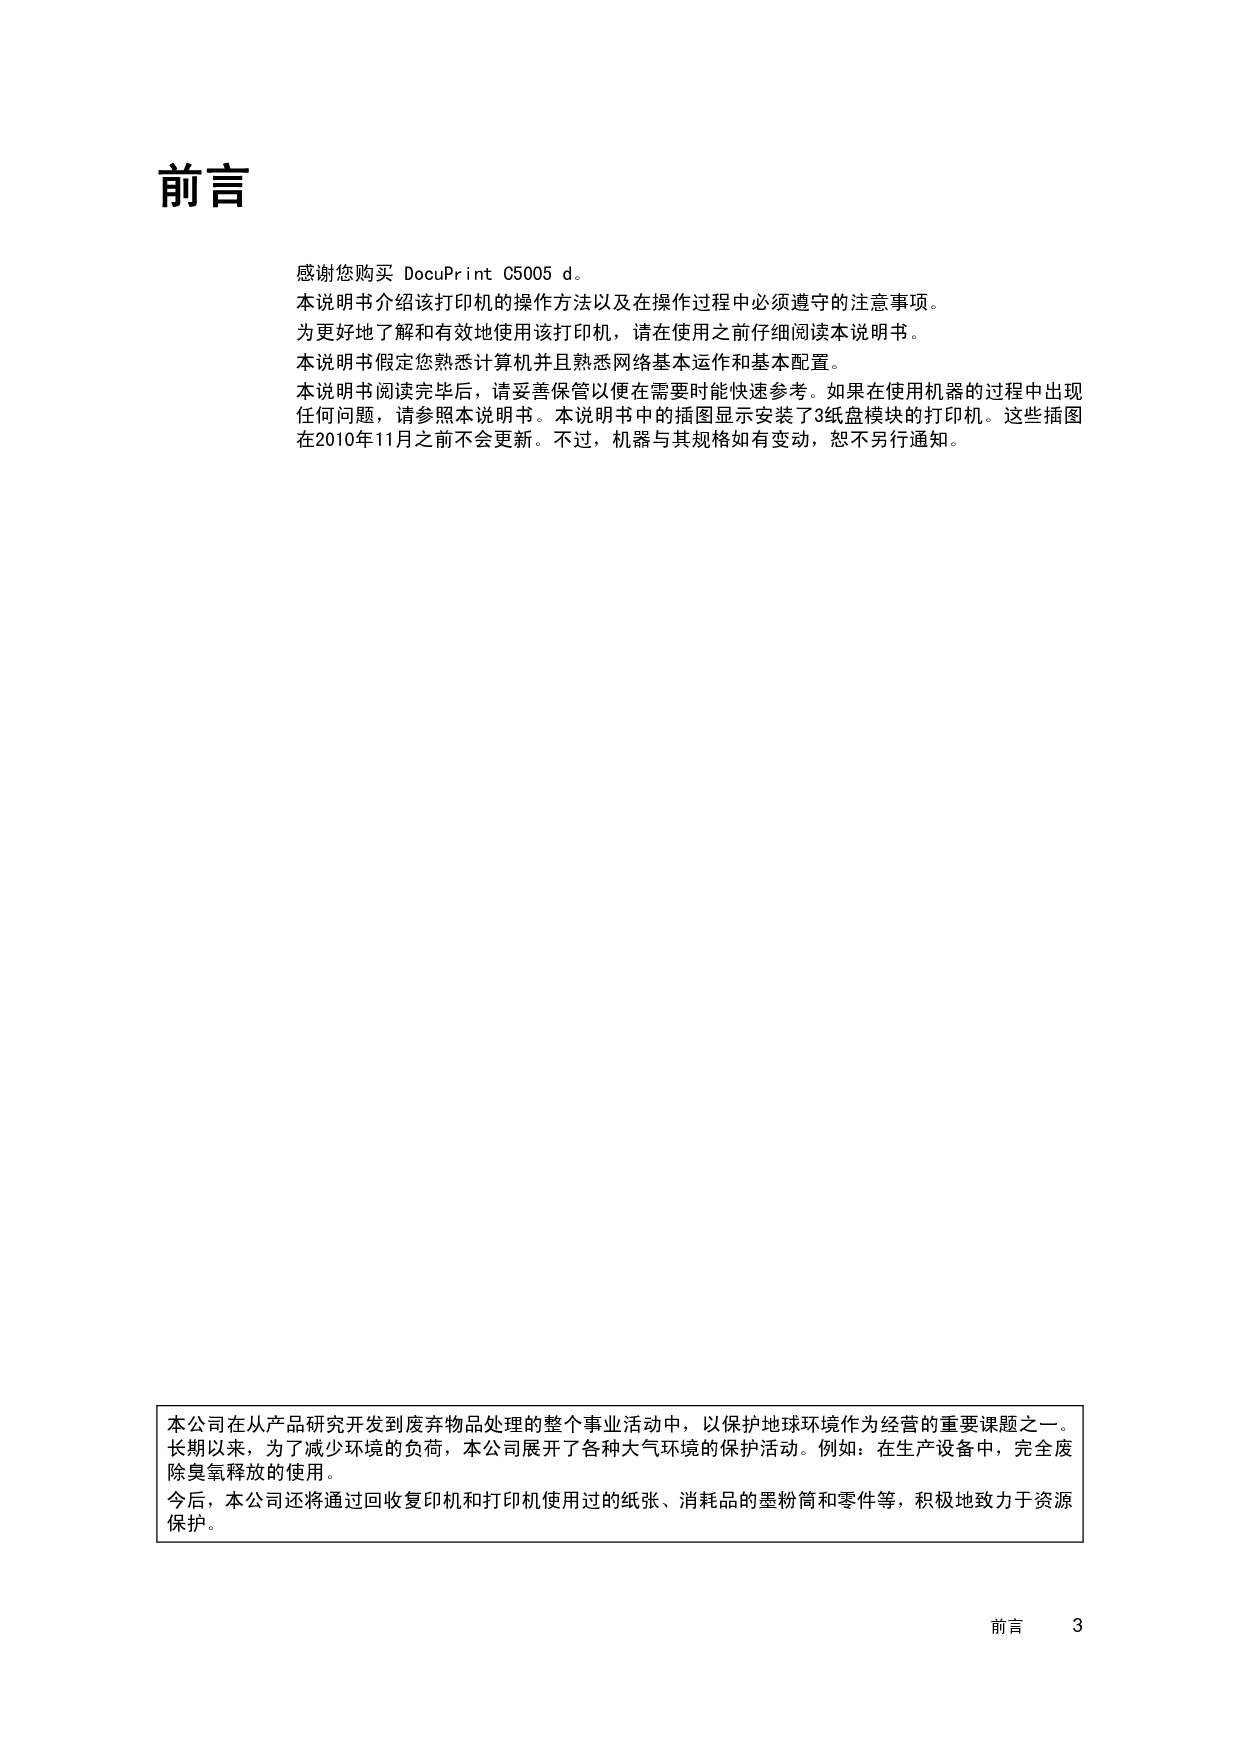 富士施乐 Fuji Xerox DocuPrint C5005 d 使用说明书 第2页